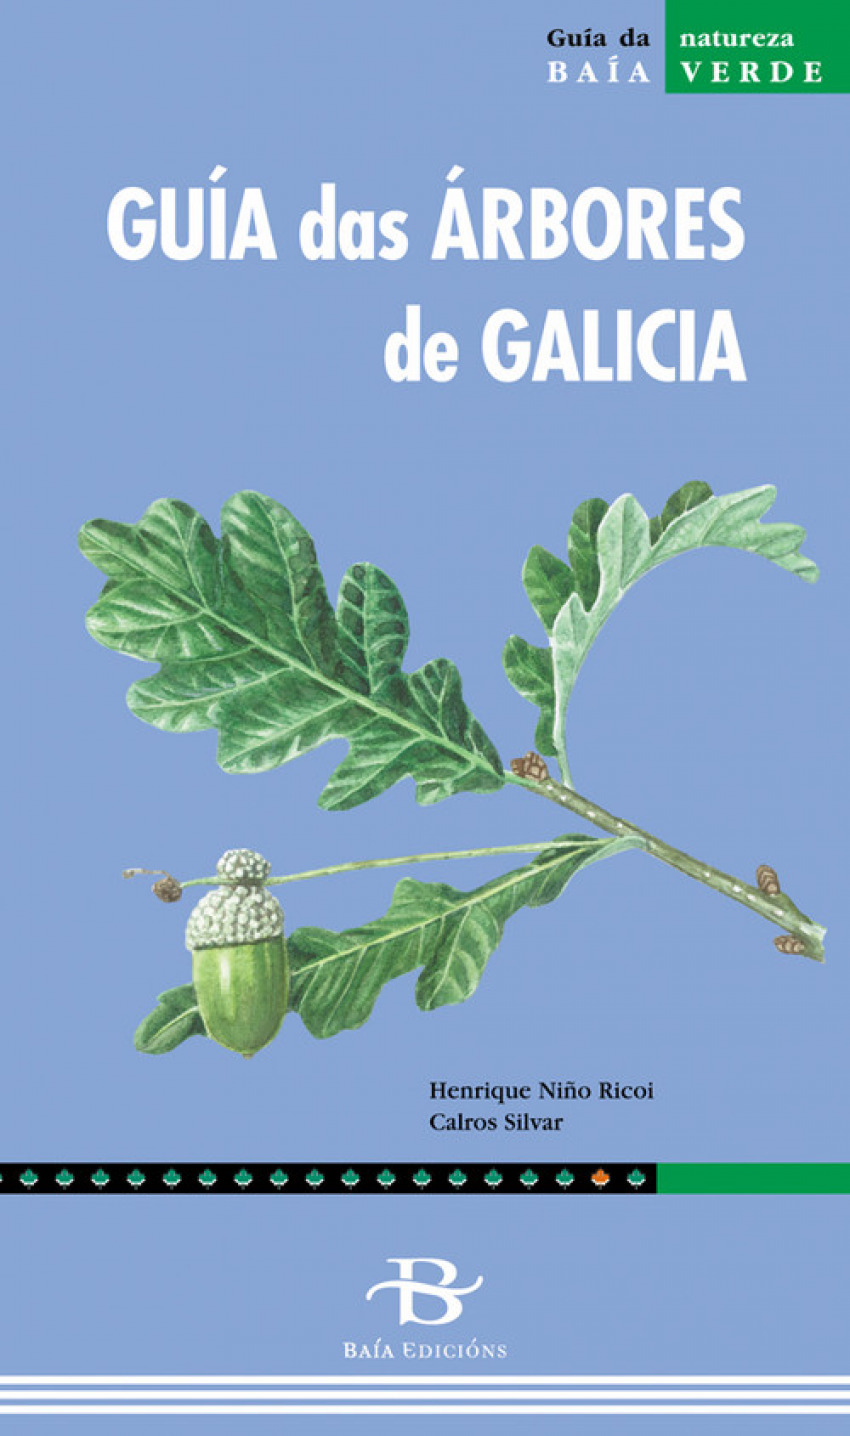 Guía dos mamíferos de Galicia Baía Verde 